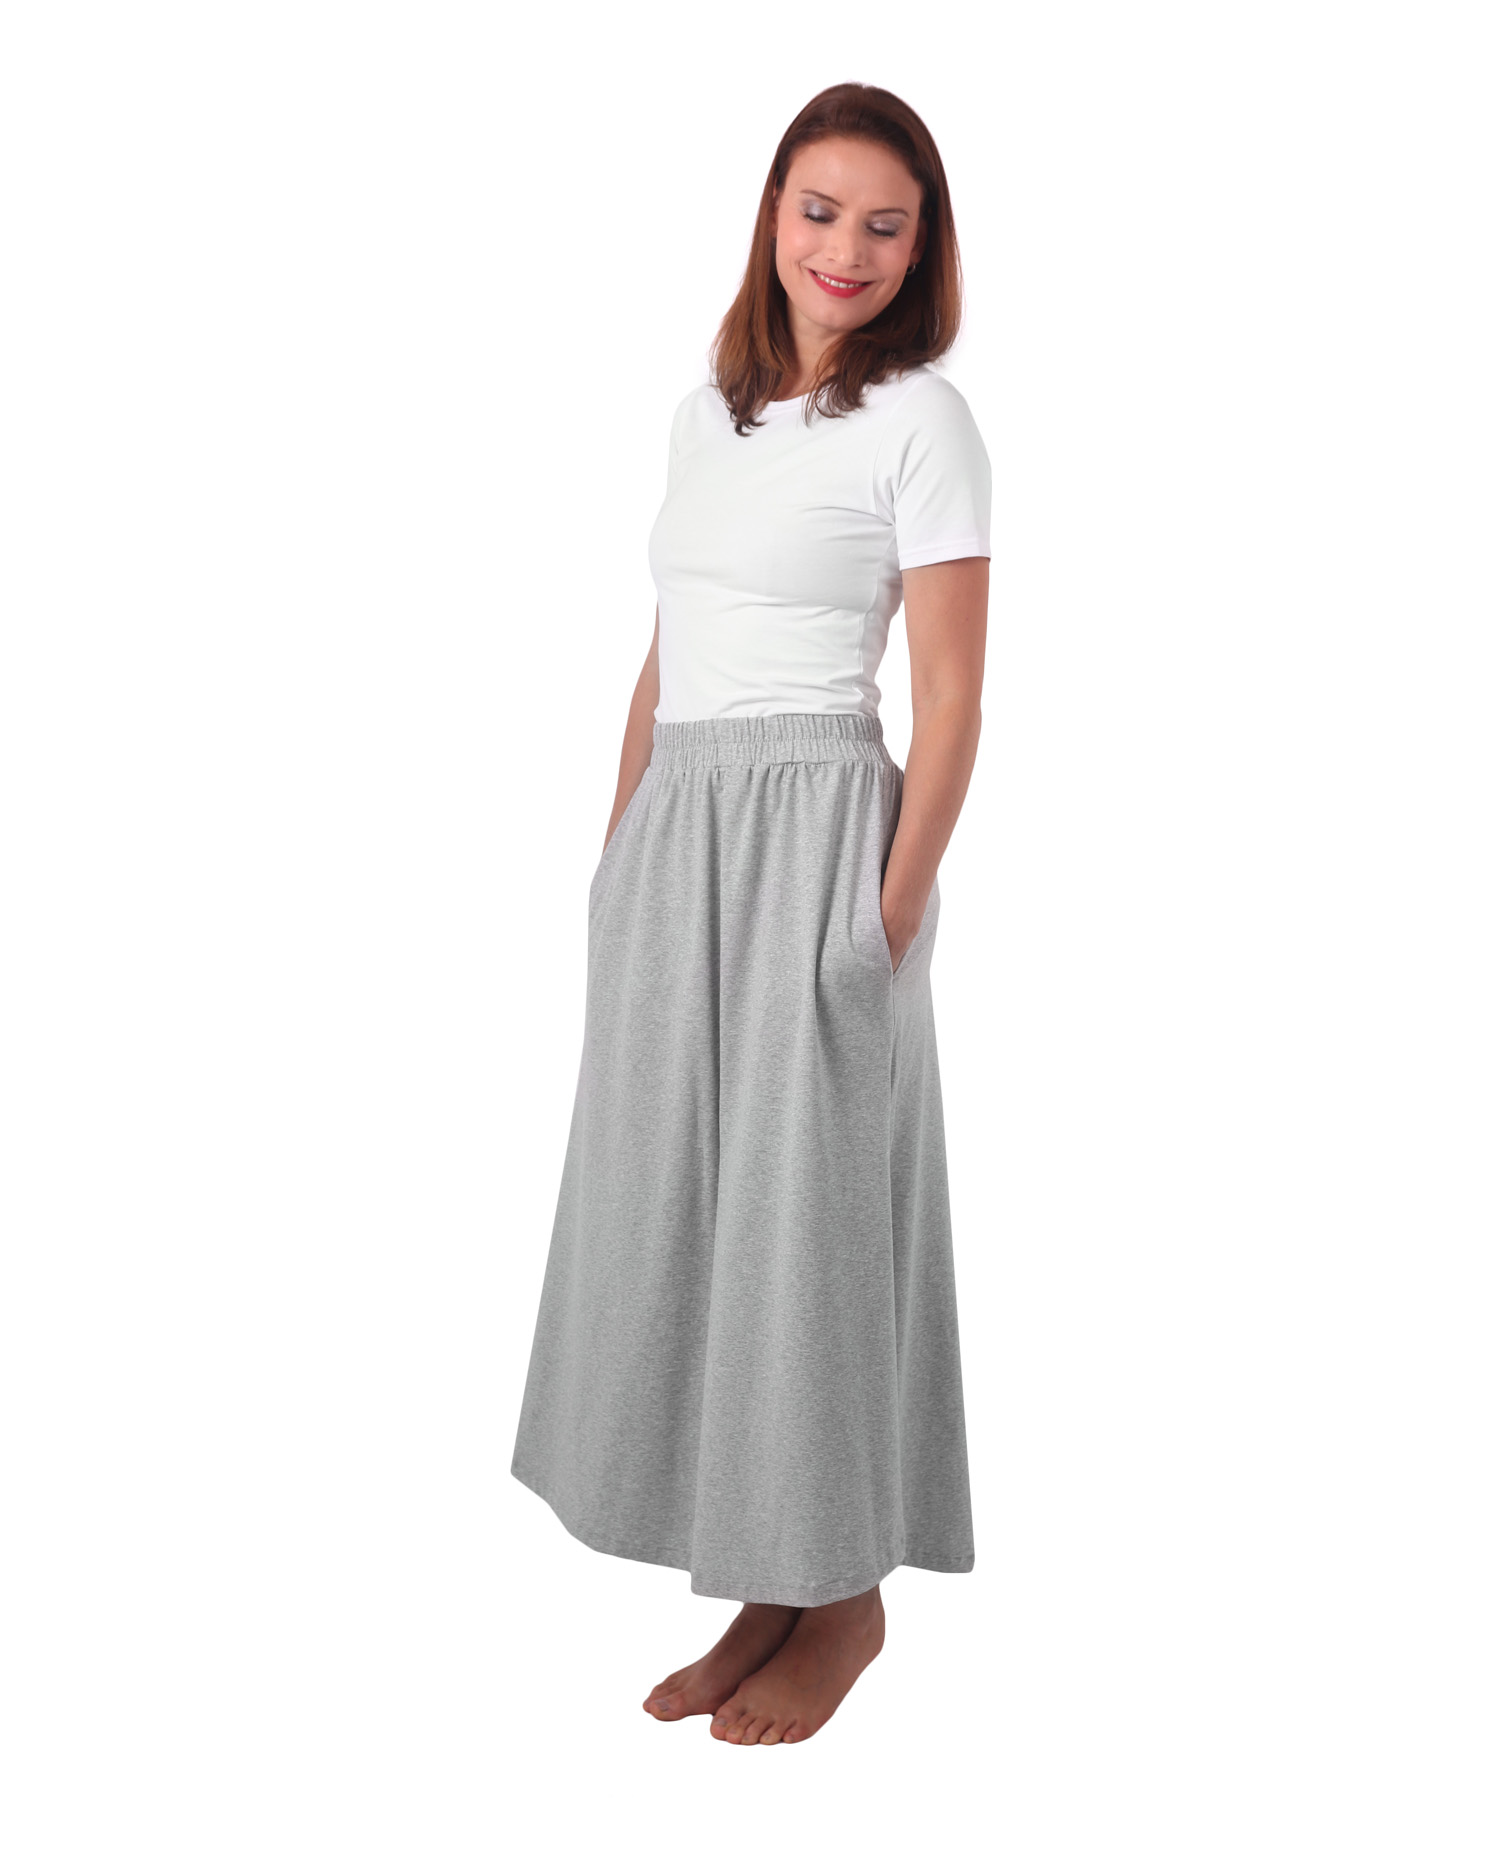 Long skirt with pockets Linda, grey melange